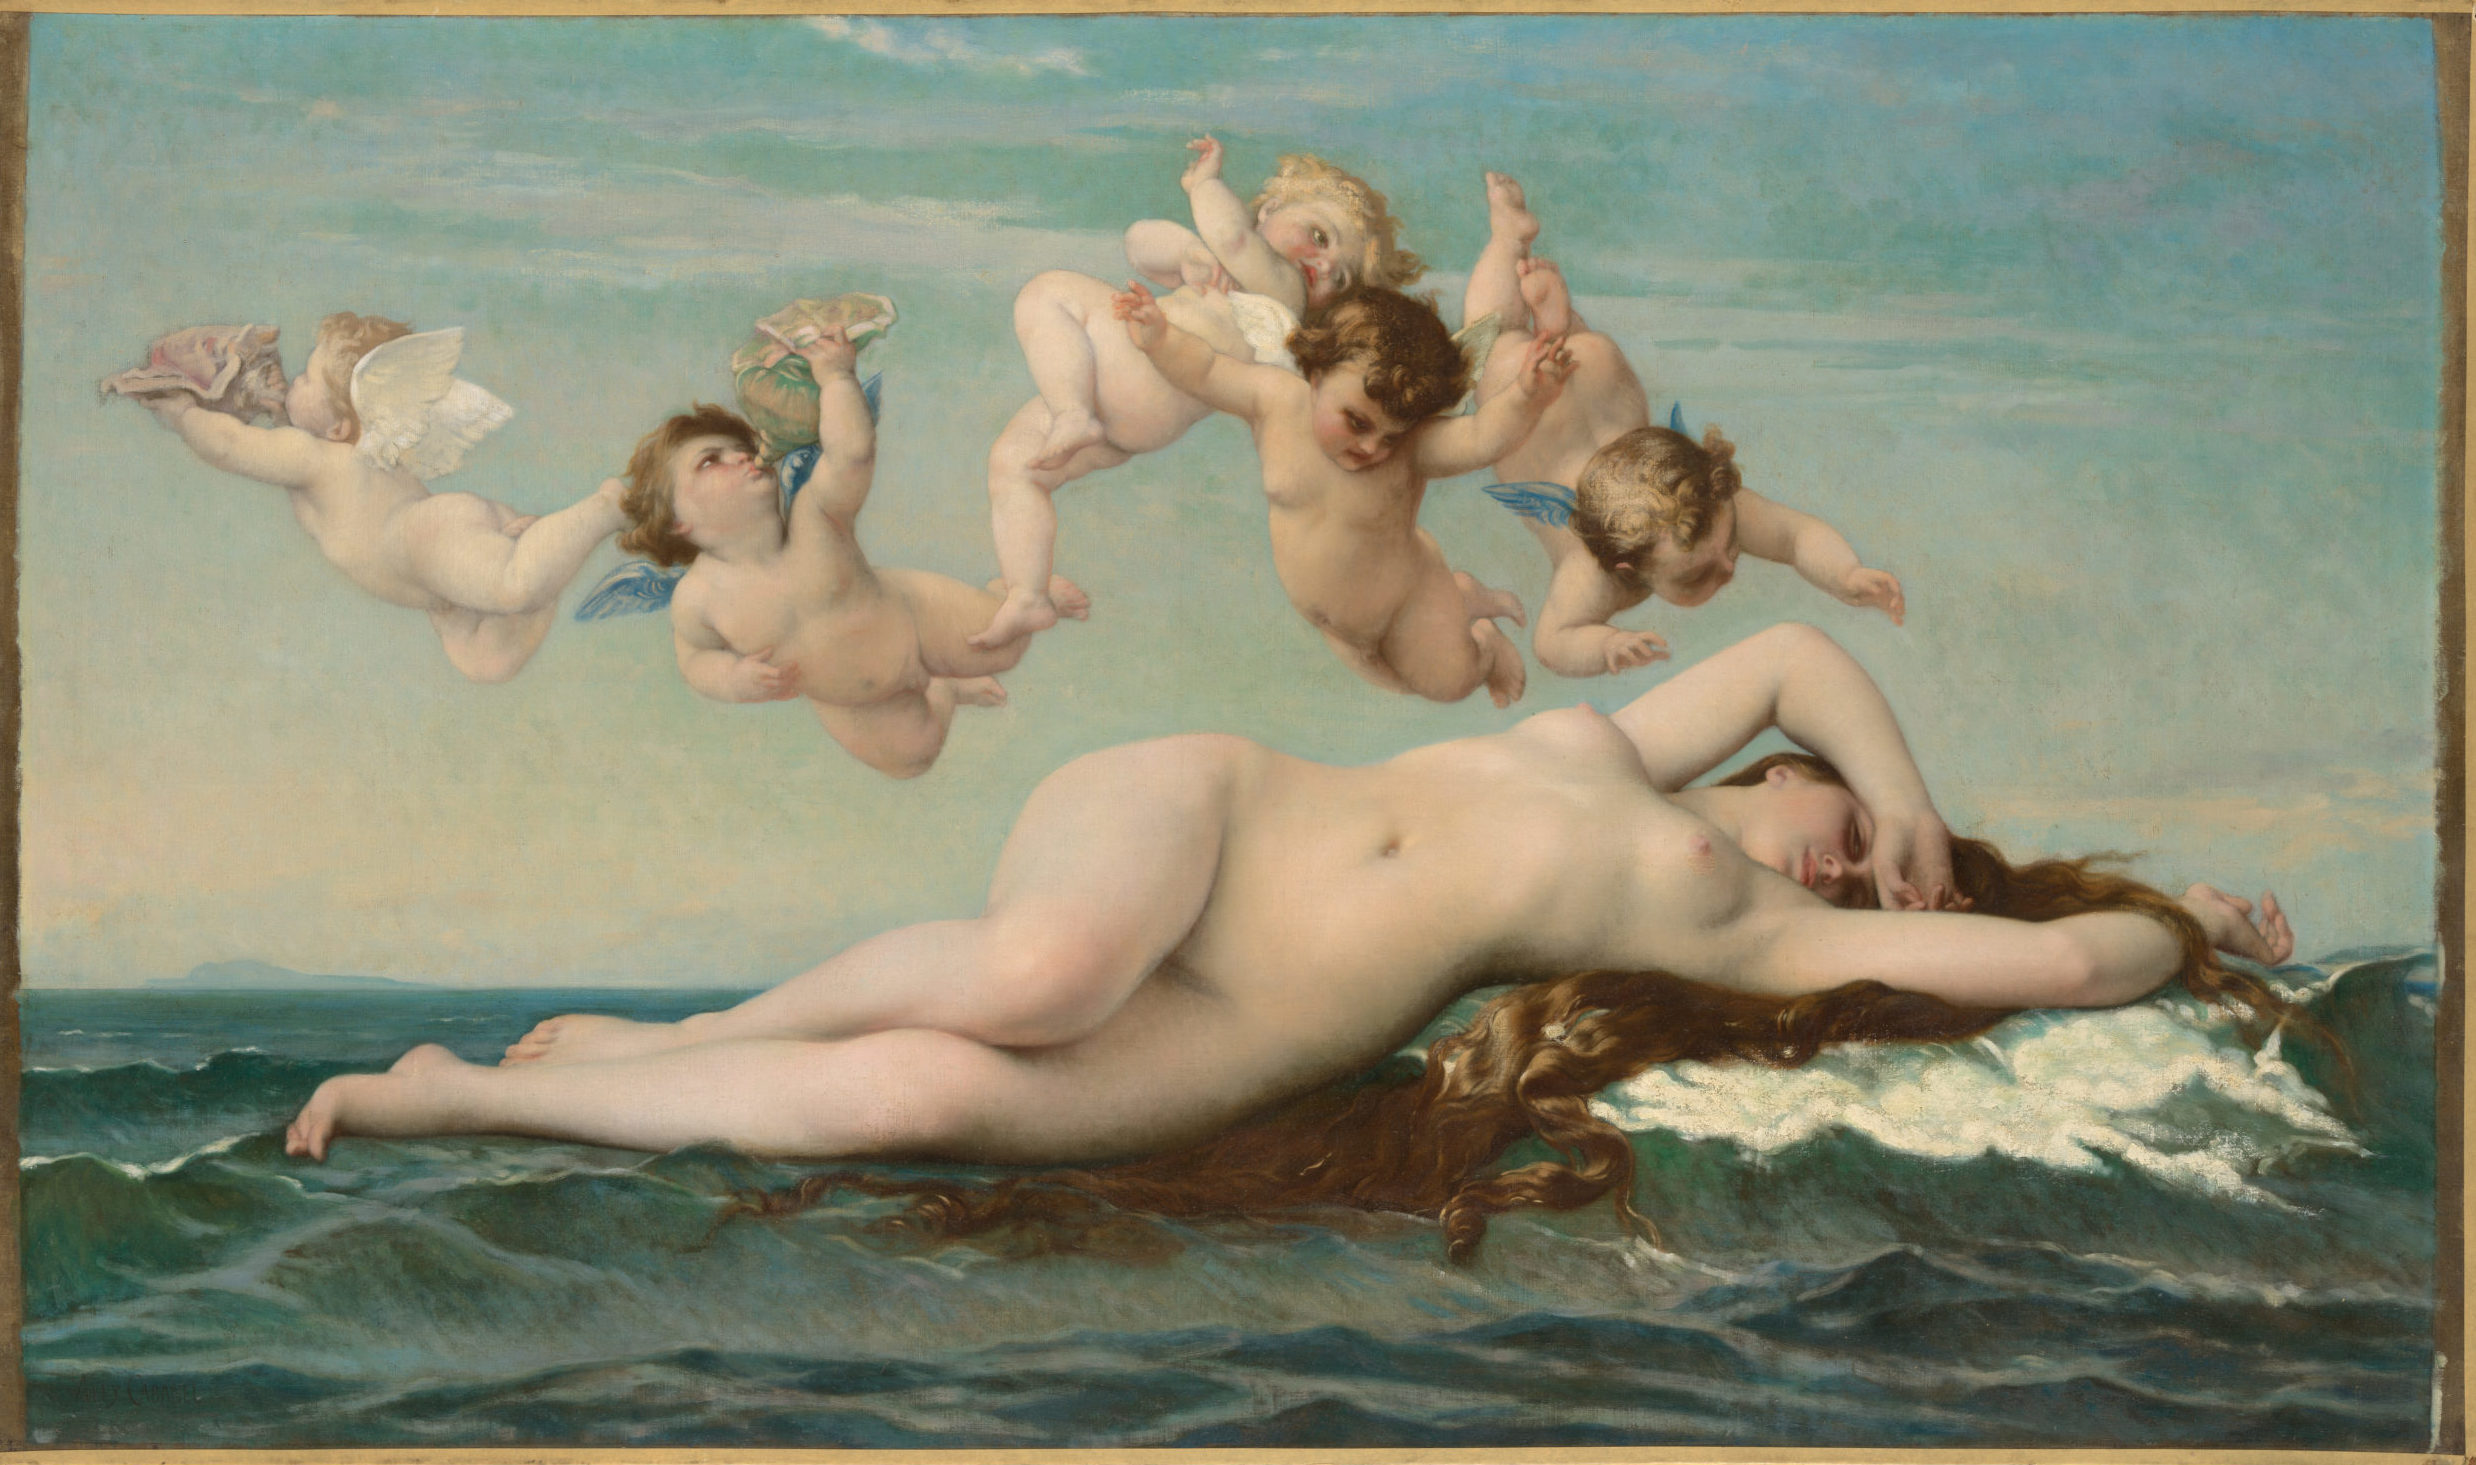 Alexandre Cabanel, Birth of Venus, 1863, oil on canvas, 130 x 225 cm (Musée d'Orsay, Paris)